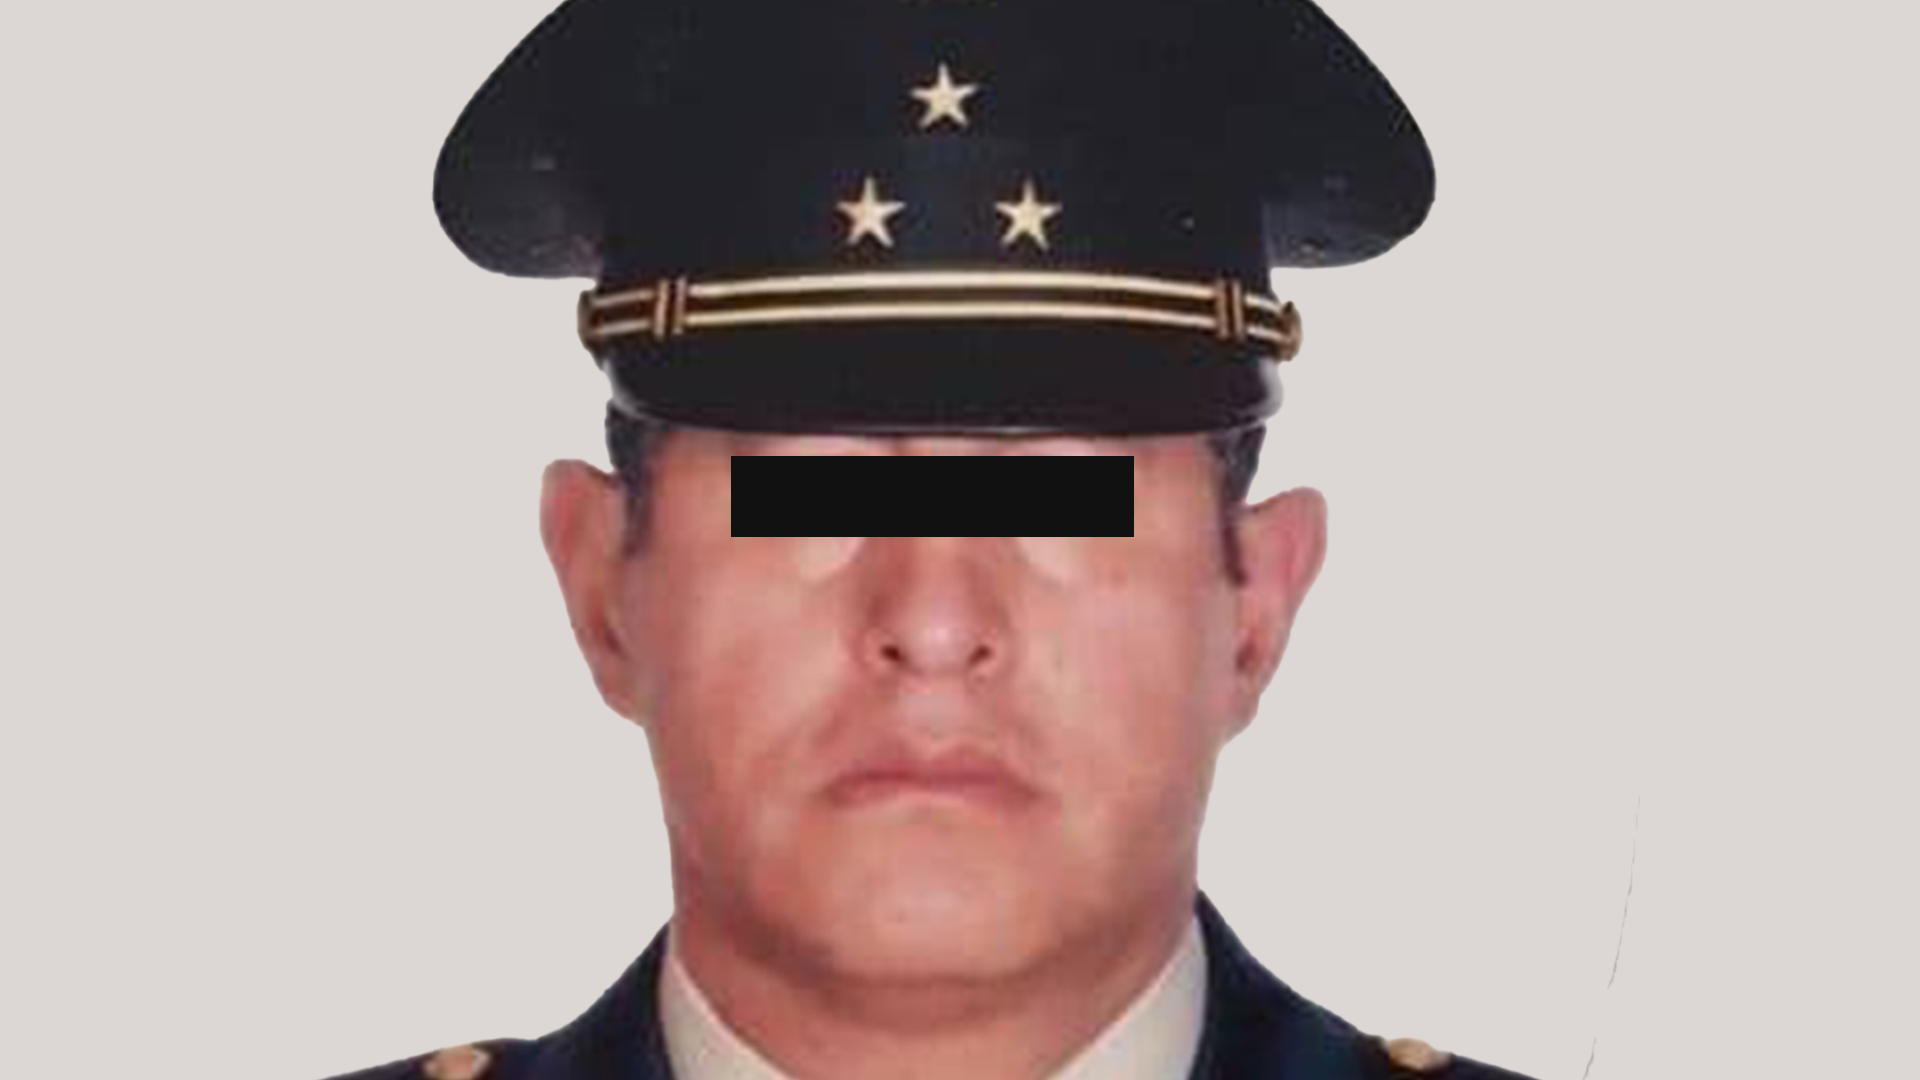 Desde el 18 de junio del 2019, el coronel Cosgaya Rodríguez se encuentra en prisión preventiva oficiosa, al estar acusado de un delito considerado grave (Foto: Facebook@emiliocosgayarodriguez)